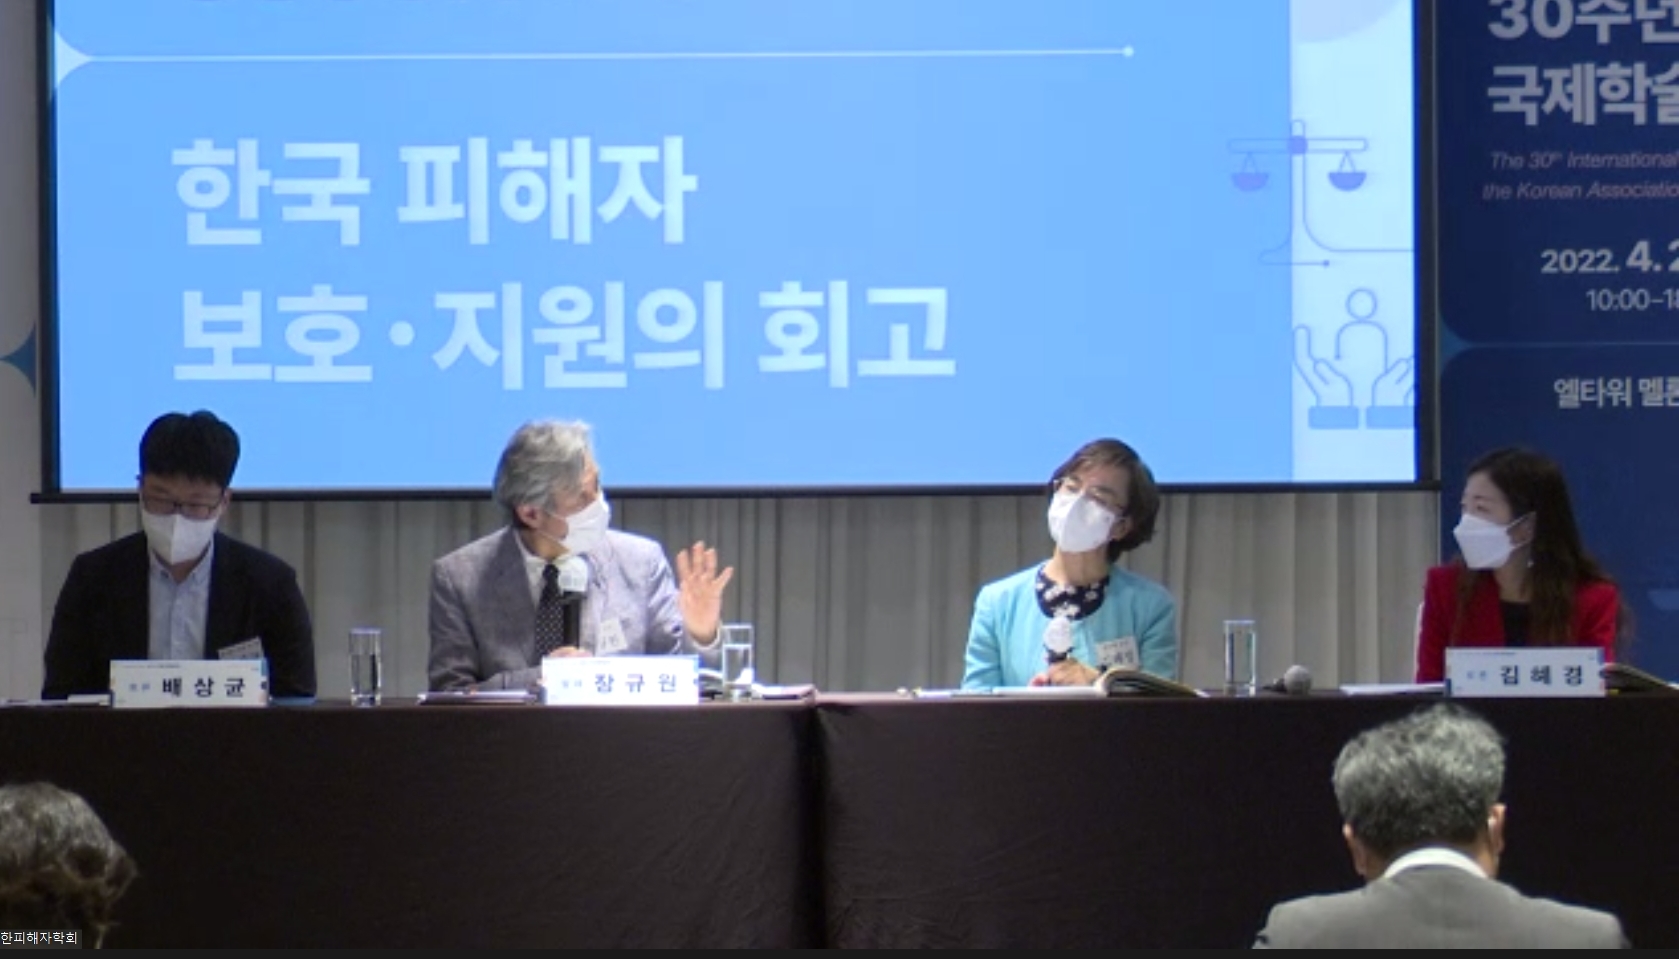 한국형사·법무정책연구원-한국피해자학회 30주년 기념 국제학술회의 개최2